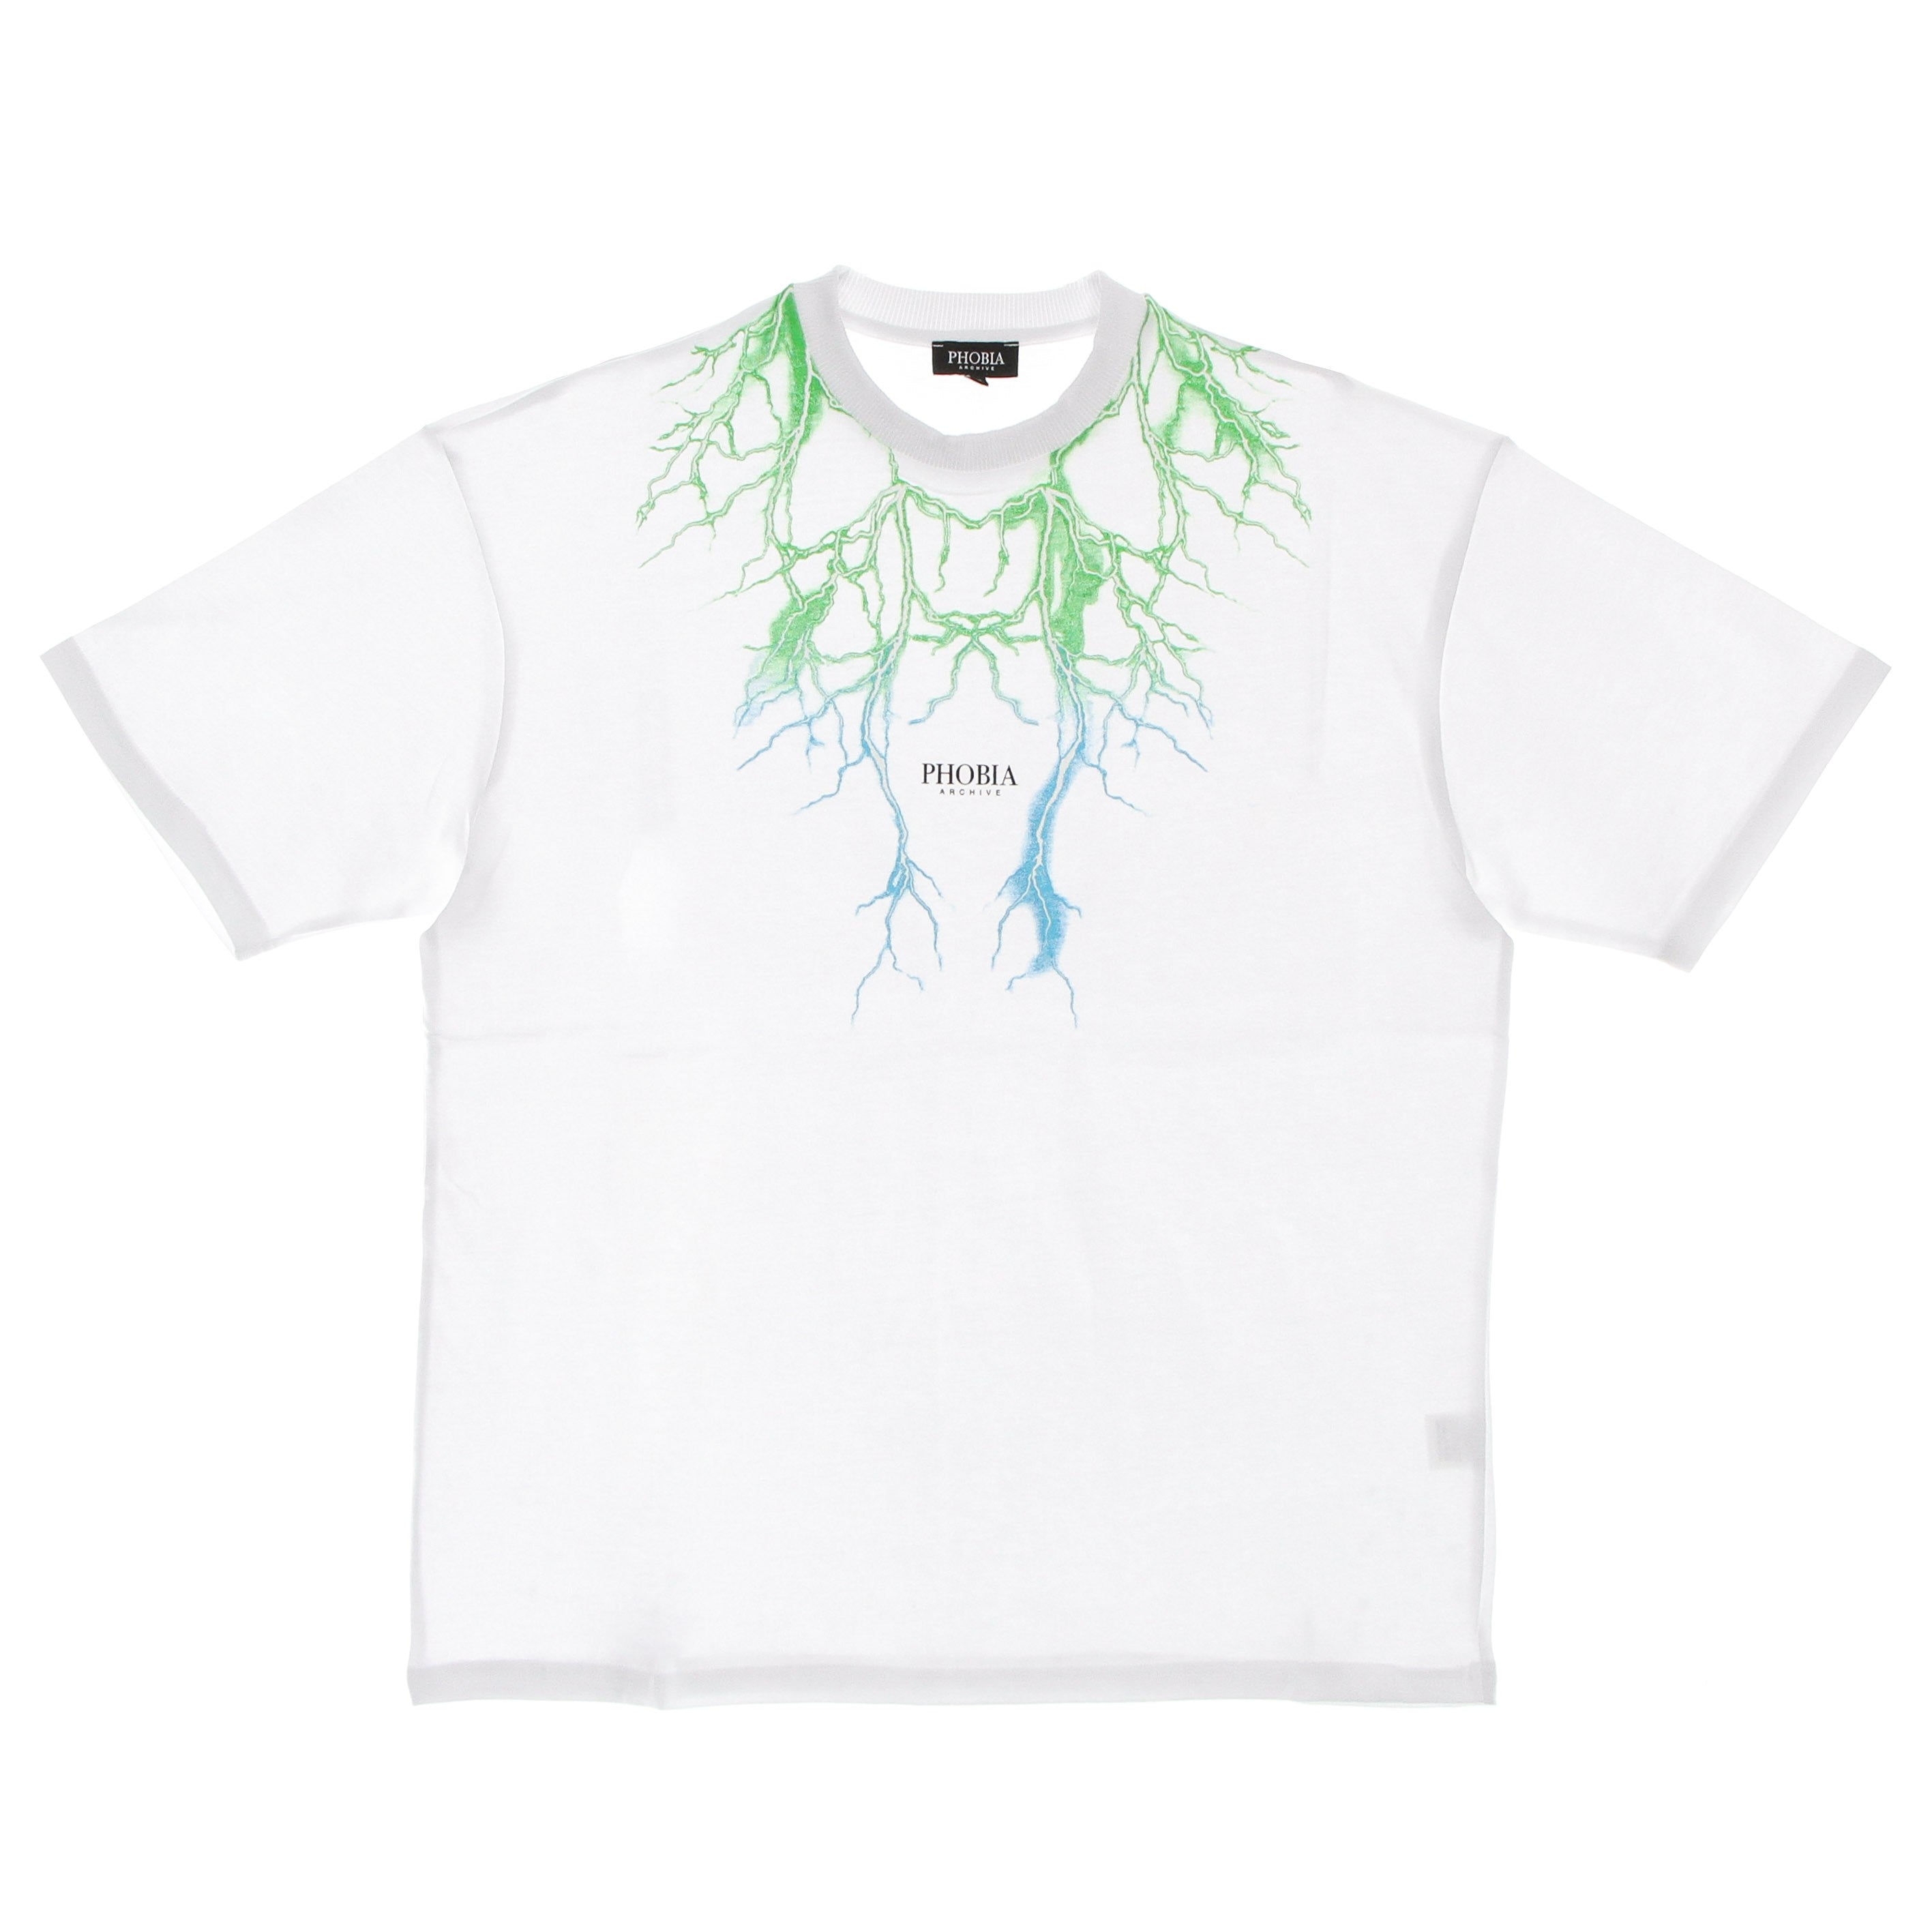 Men's Lightning Tee White/green/lightblue T-shirt